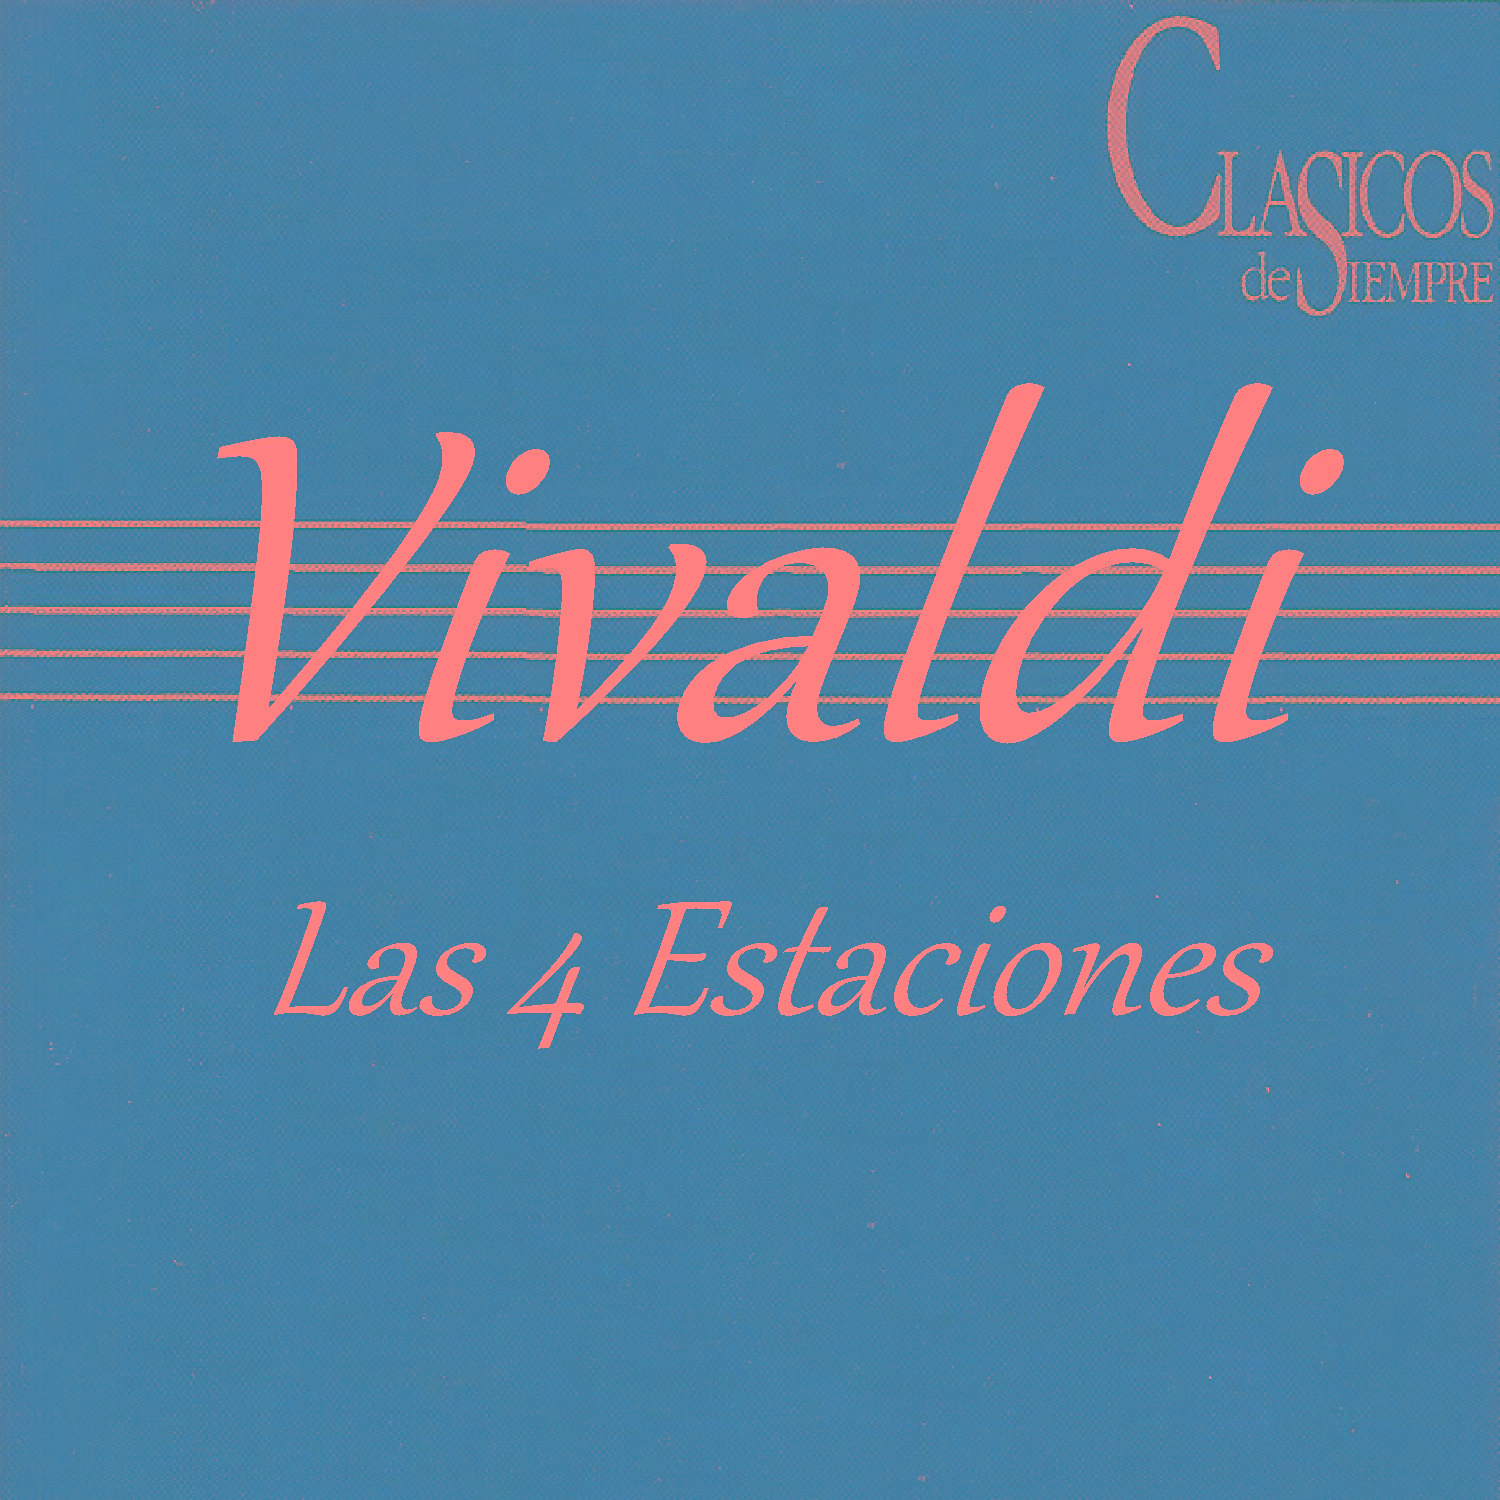 Clasicos de Siempre - Vivaldi